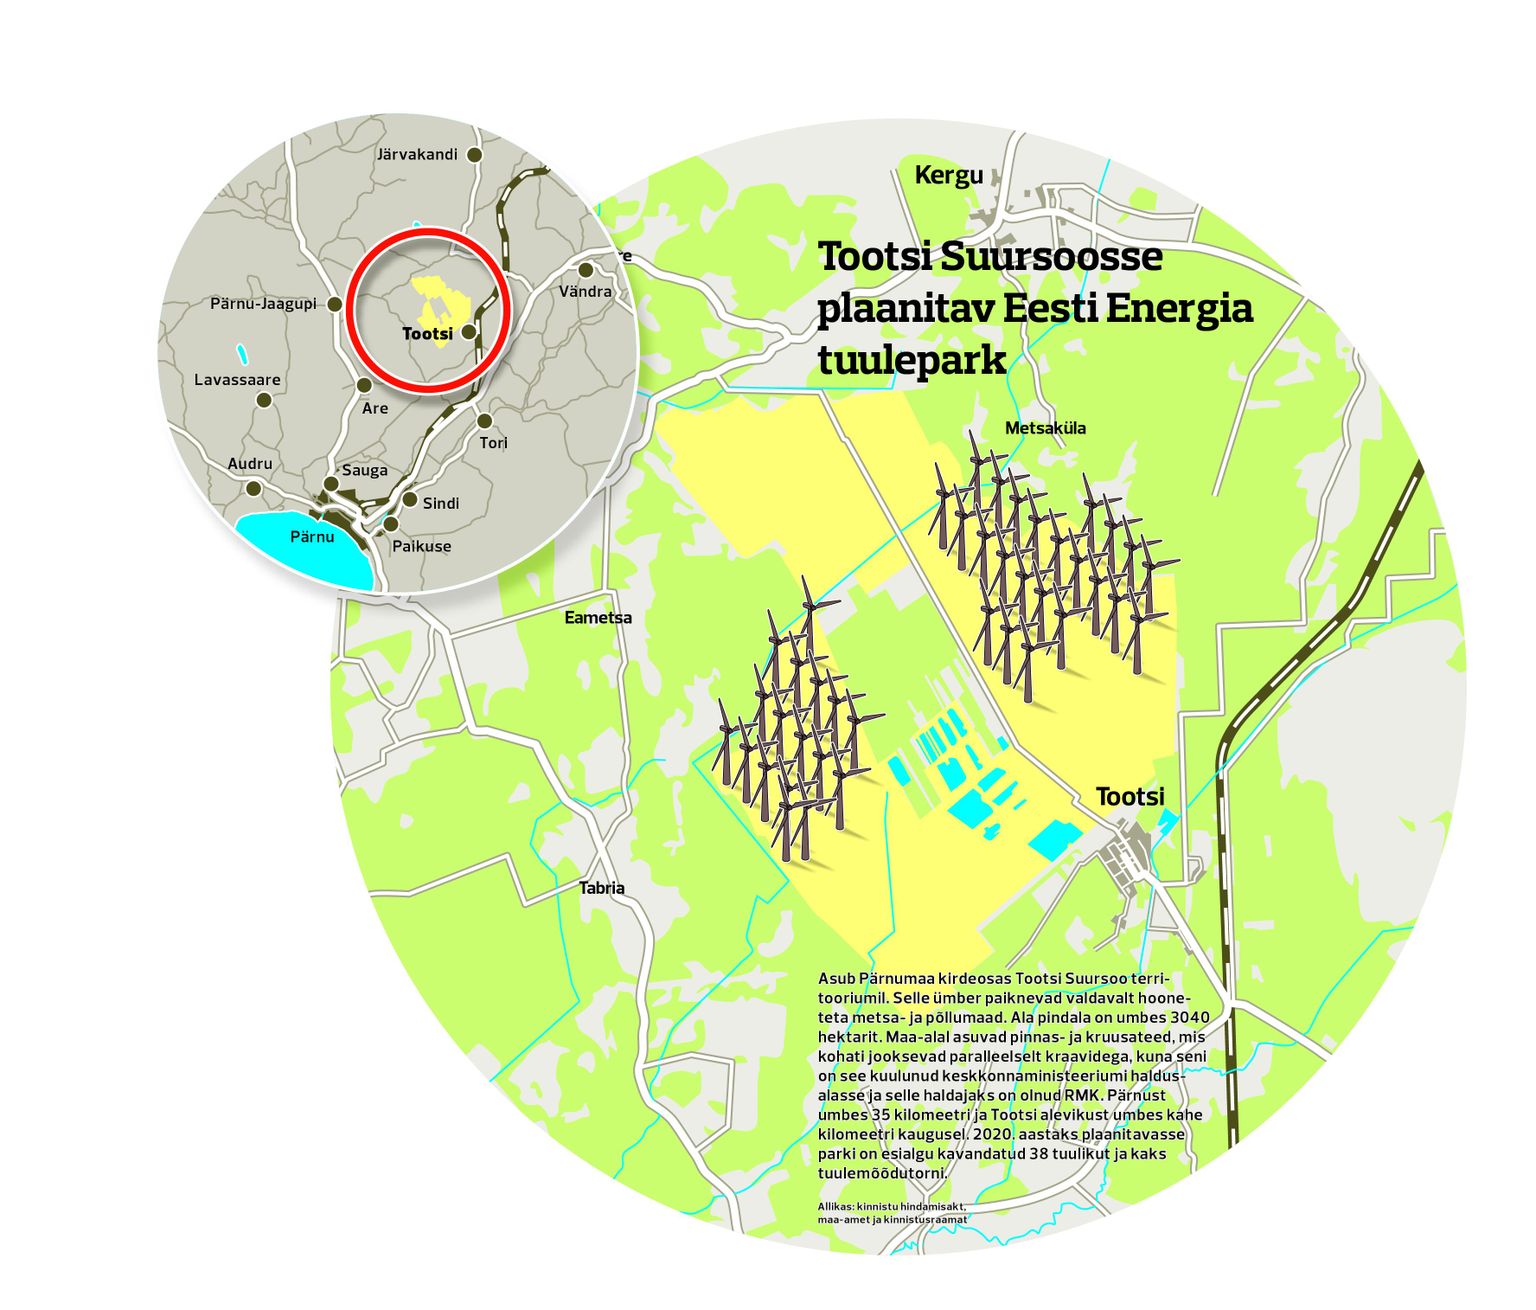 Tootsi Suursoosse plaanitav Eesti Energia tuulepark